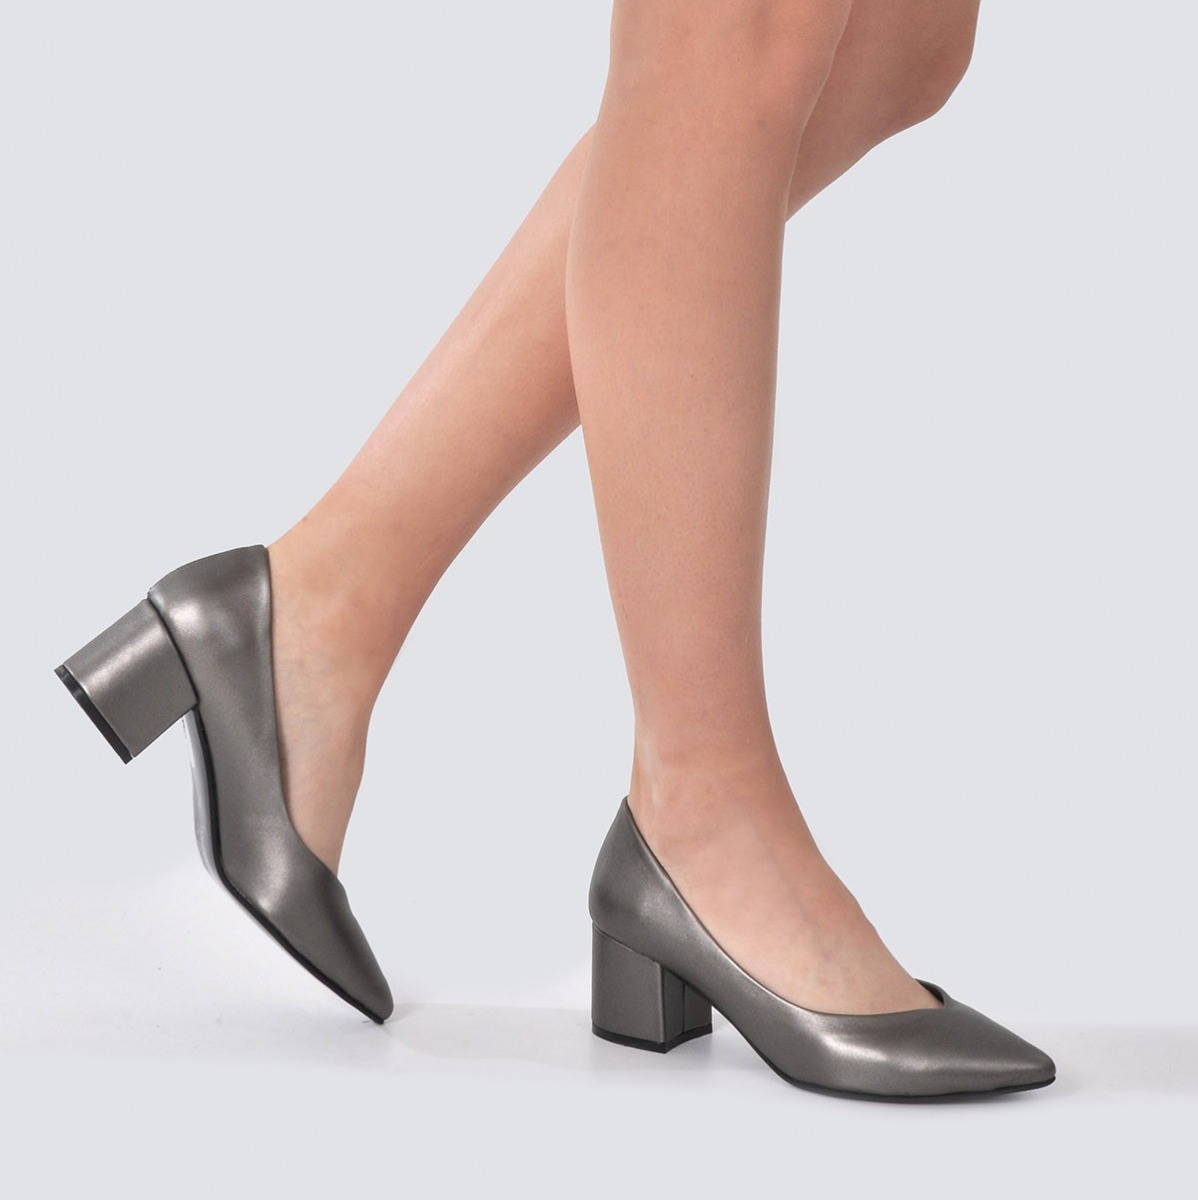 Flo Kadın Platin Klasik Topuklu Ayakkabı VZN21-040Y. 3